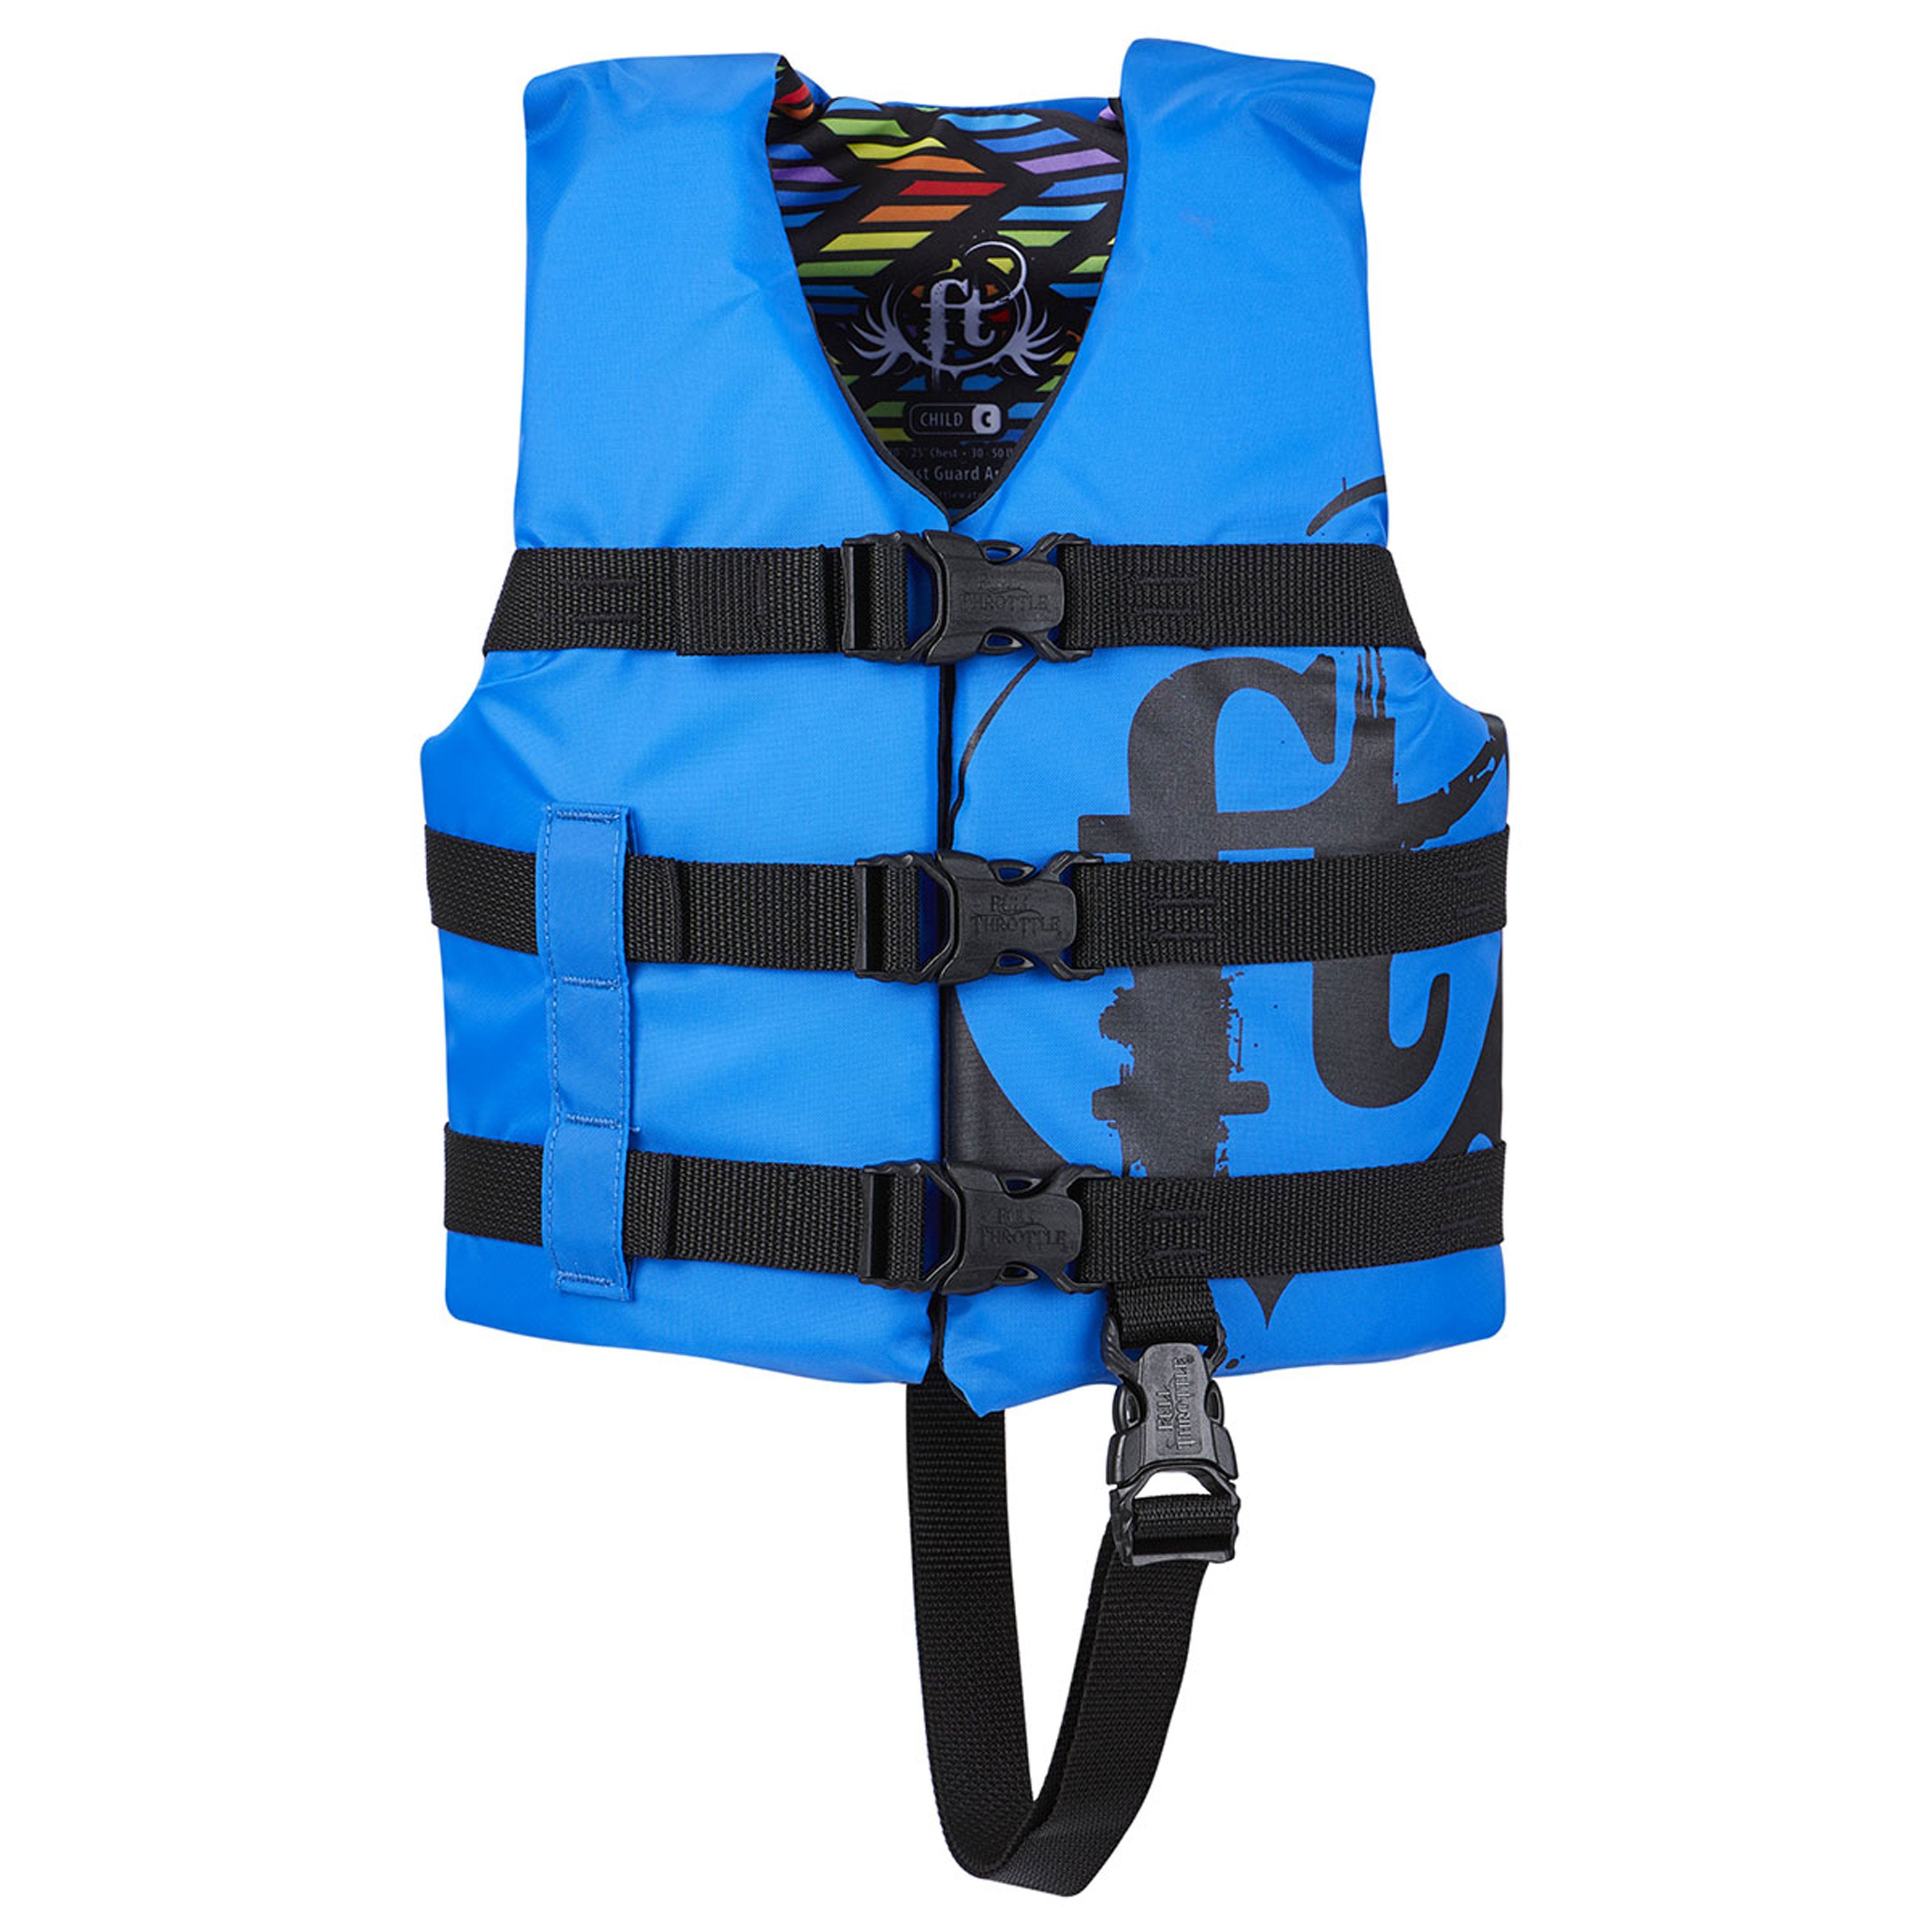 Full Throttle 112200-500-001-19 Nylon Water Sports Vest - Child, Blue